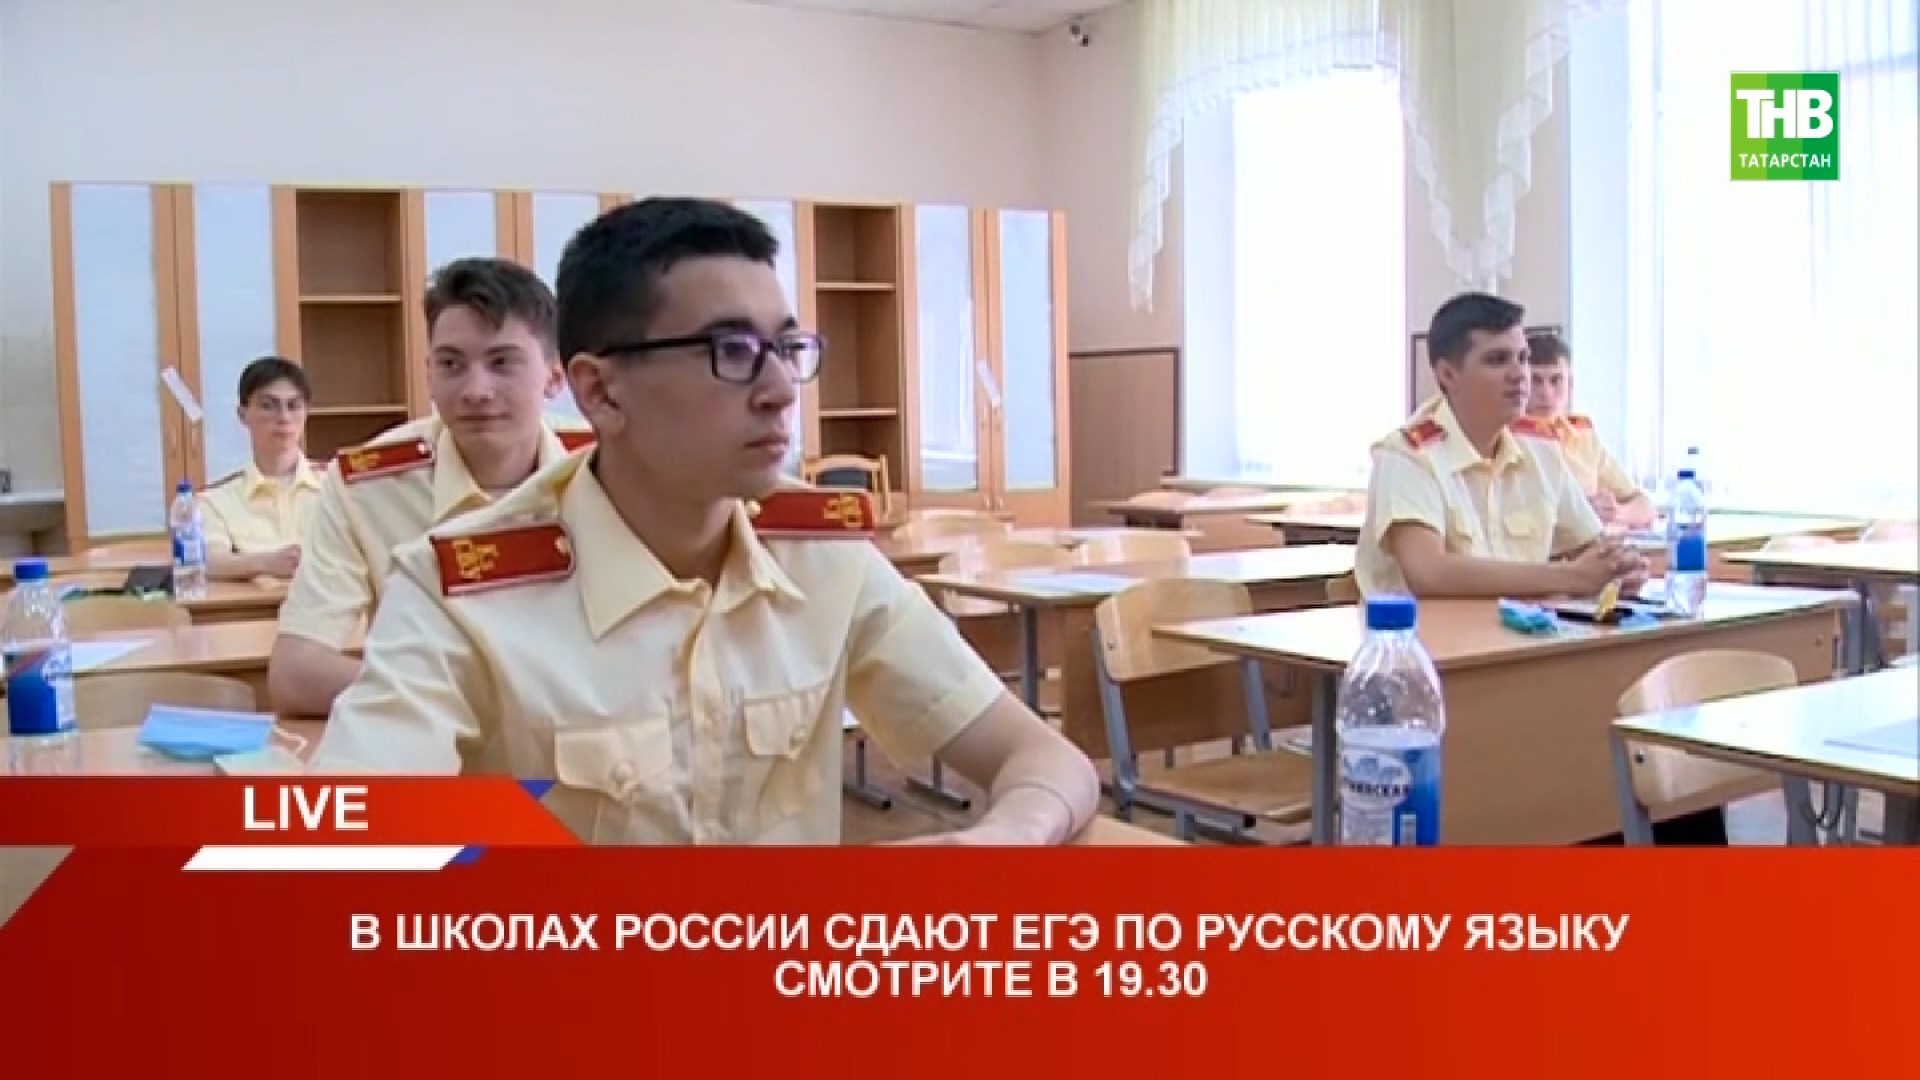 В школах России сдают ЕГЭ по рускому языку | Казань 03/06/21 LIVE | ТНВ